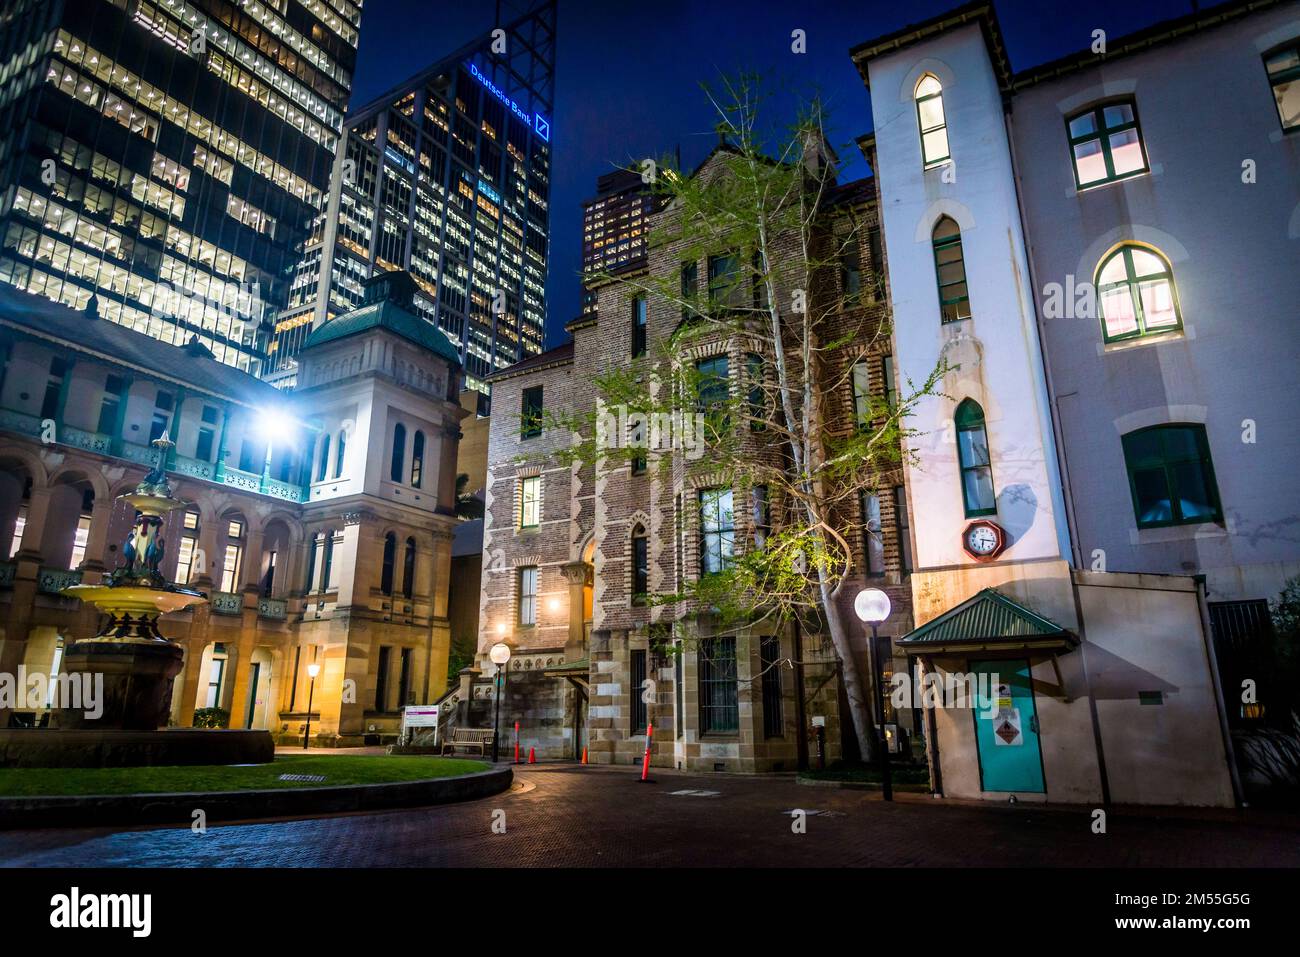 L'hôpital de Sydney entouré de gratte-ciels d'affaires la nuit, il est situé sur Macquarie Street dans le quartier central des affaires de Sydney et est l'ol Banque D'Images